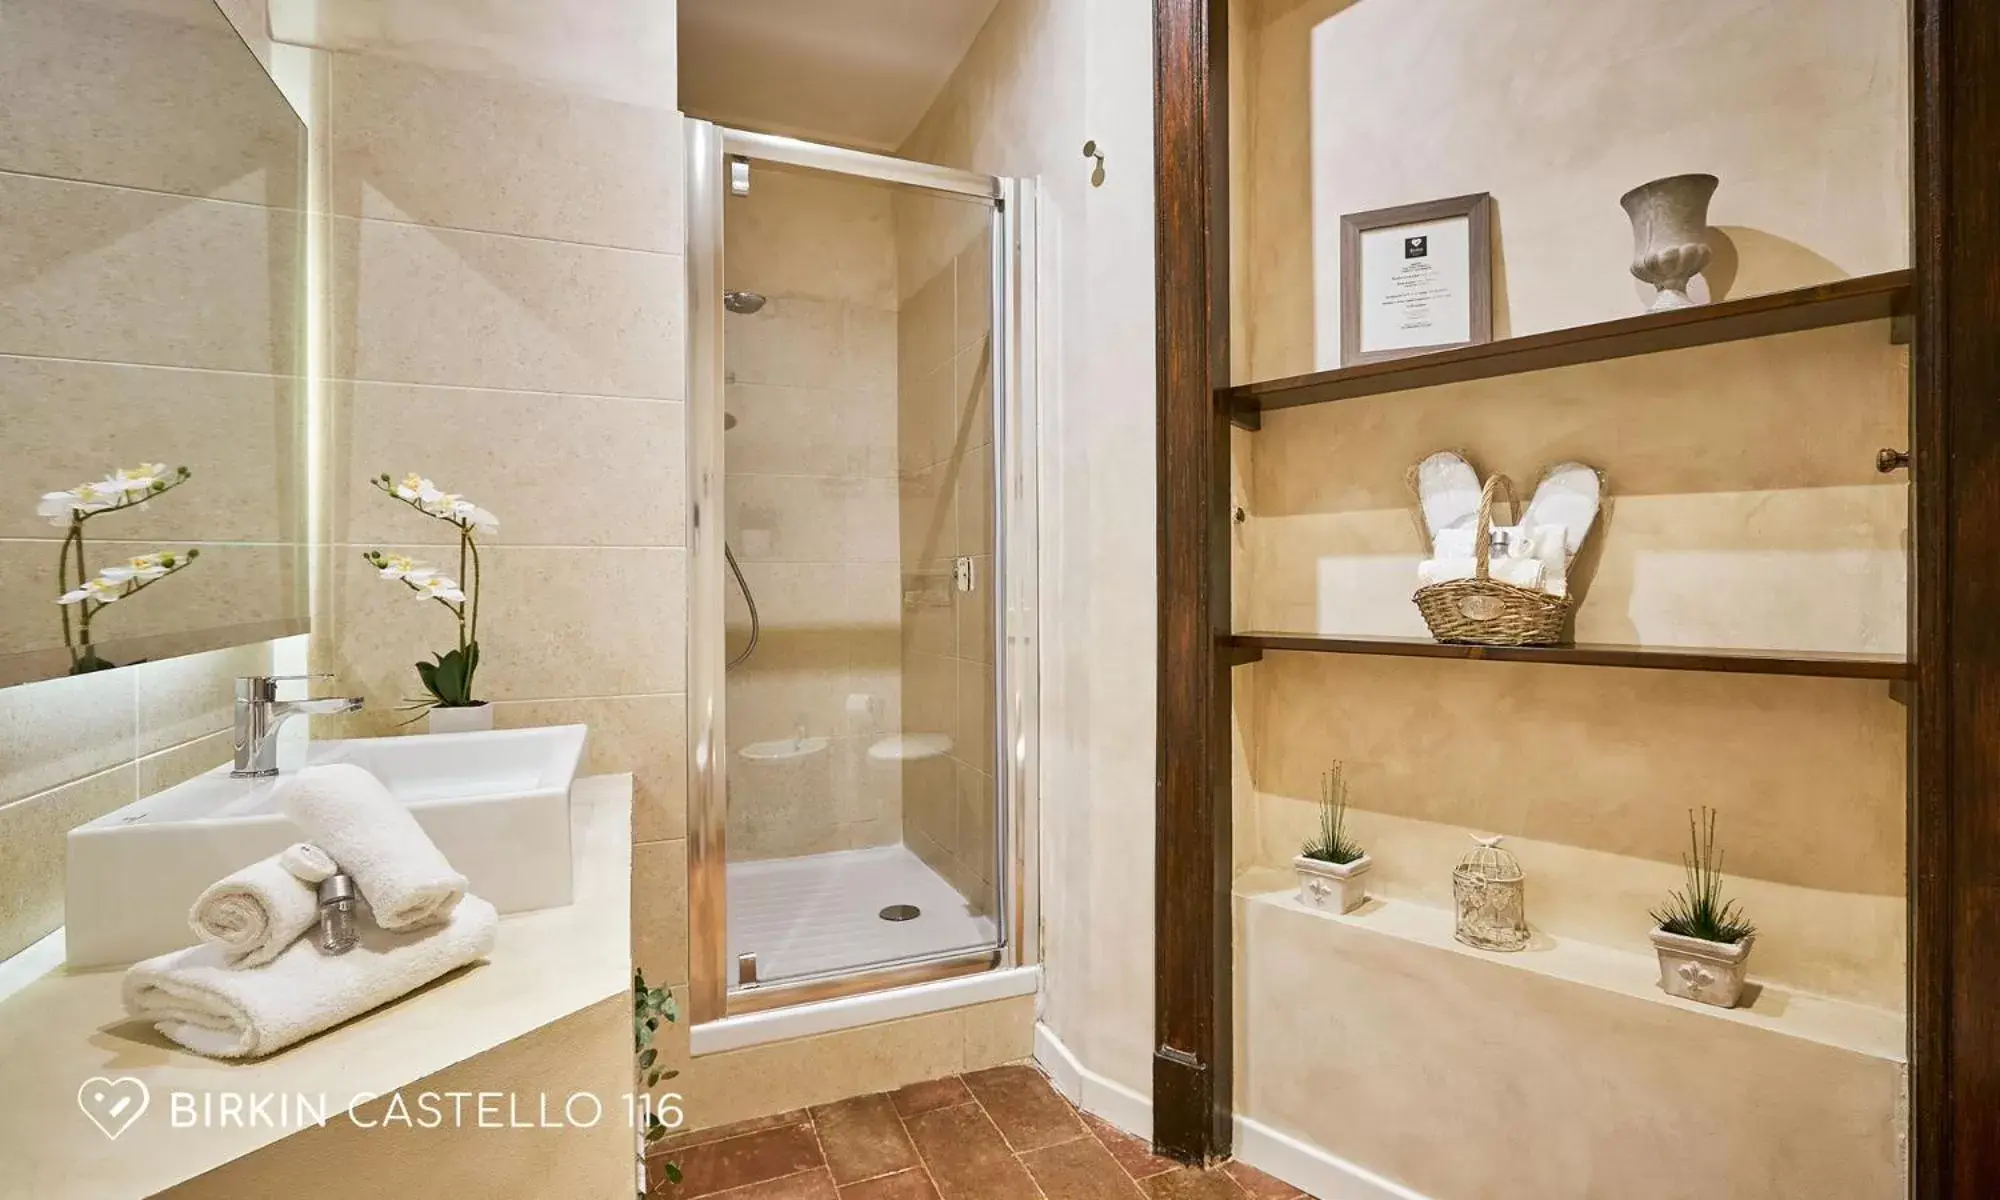 Shower, Bathroom in Albergo Diffuso Birkin Castello